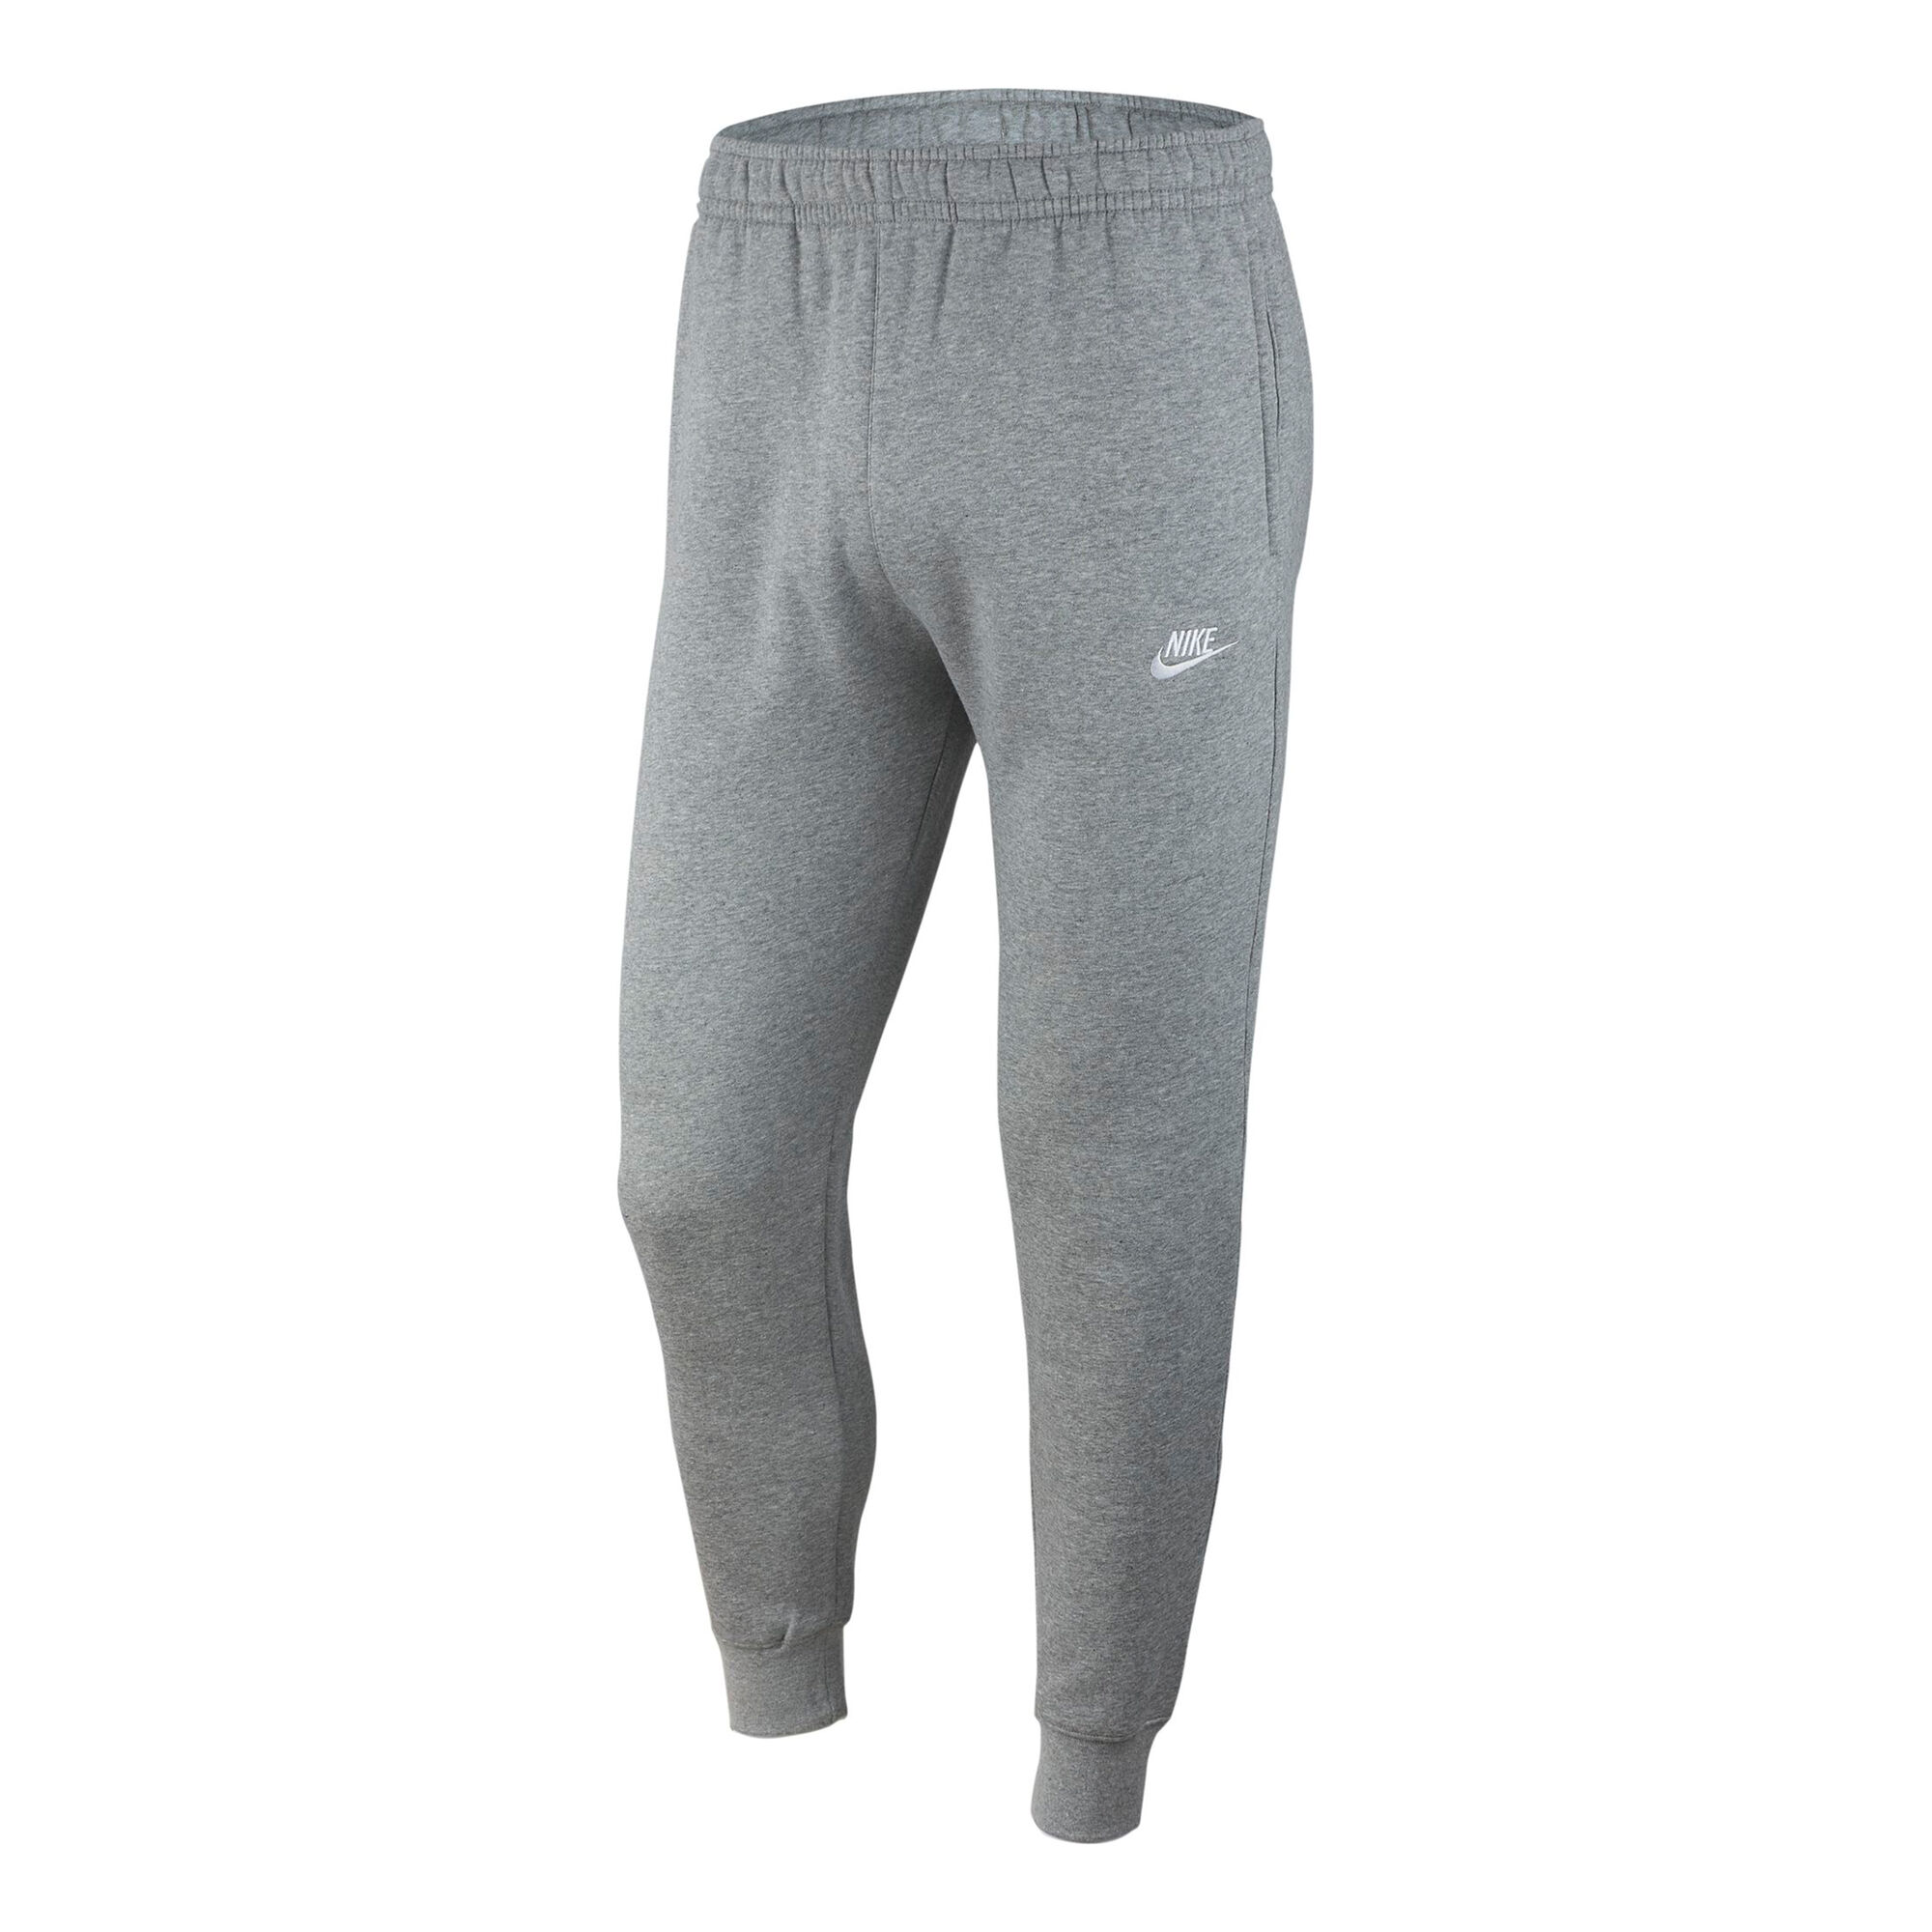 Buy Nike Sportswear Club Fleece Training Pants Men Grey, Silver